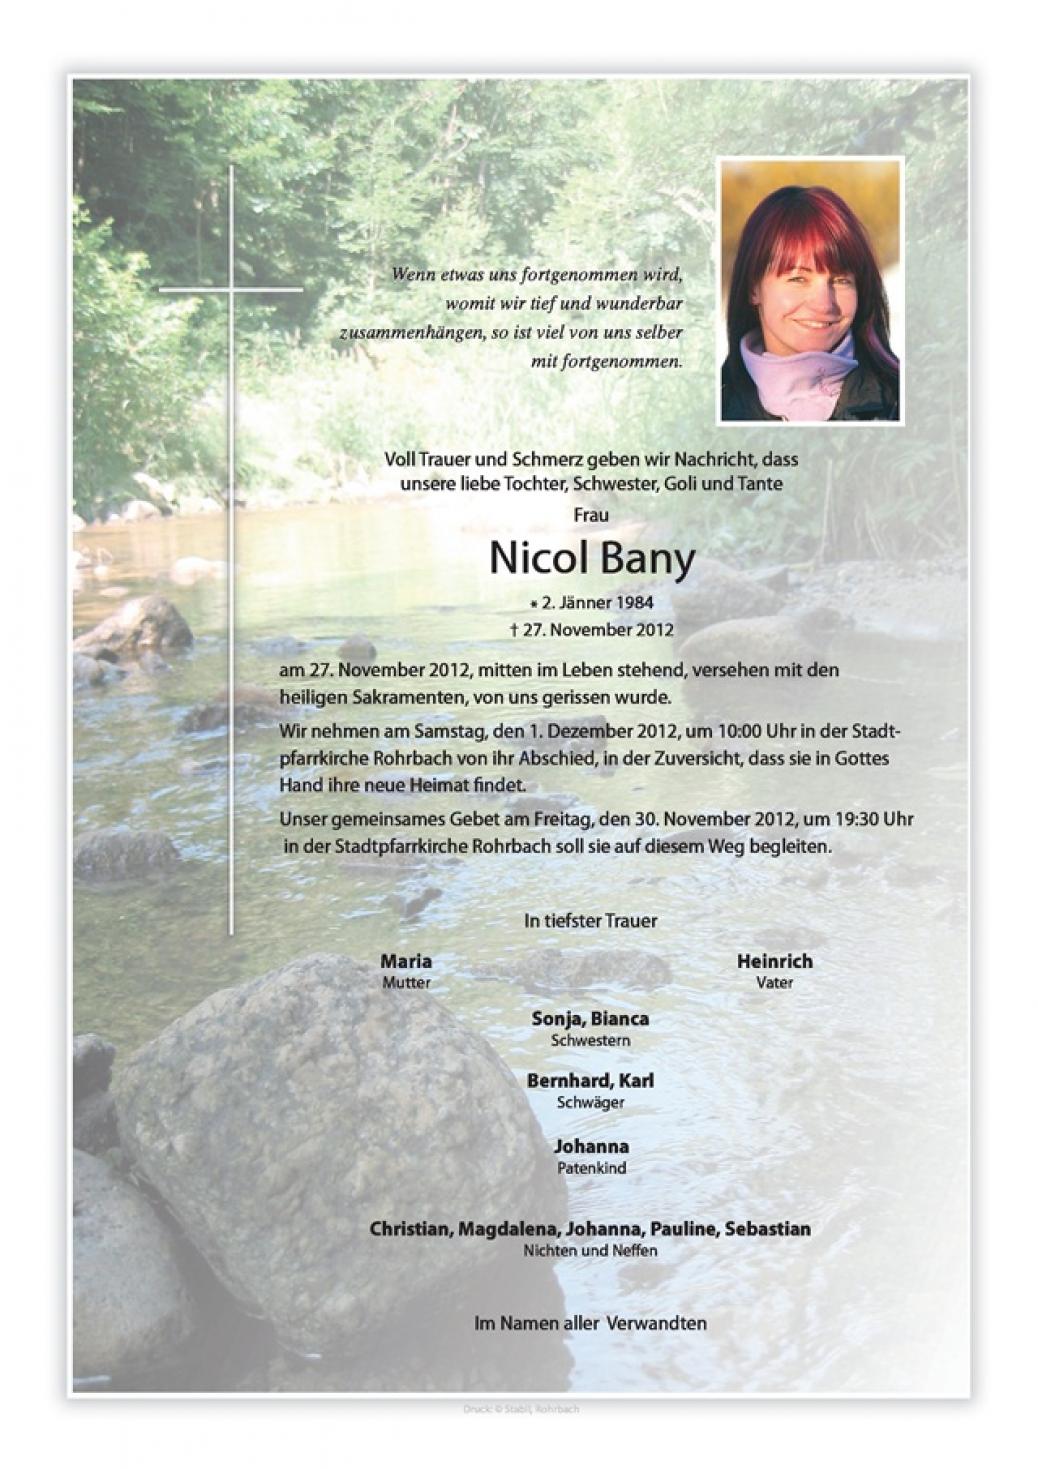 Wir trauern um unser Mitglied “Nicol Bany”